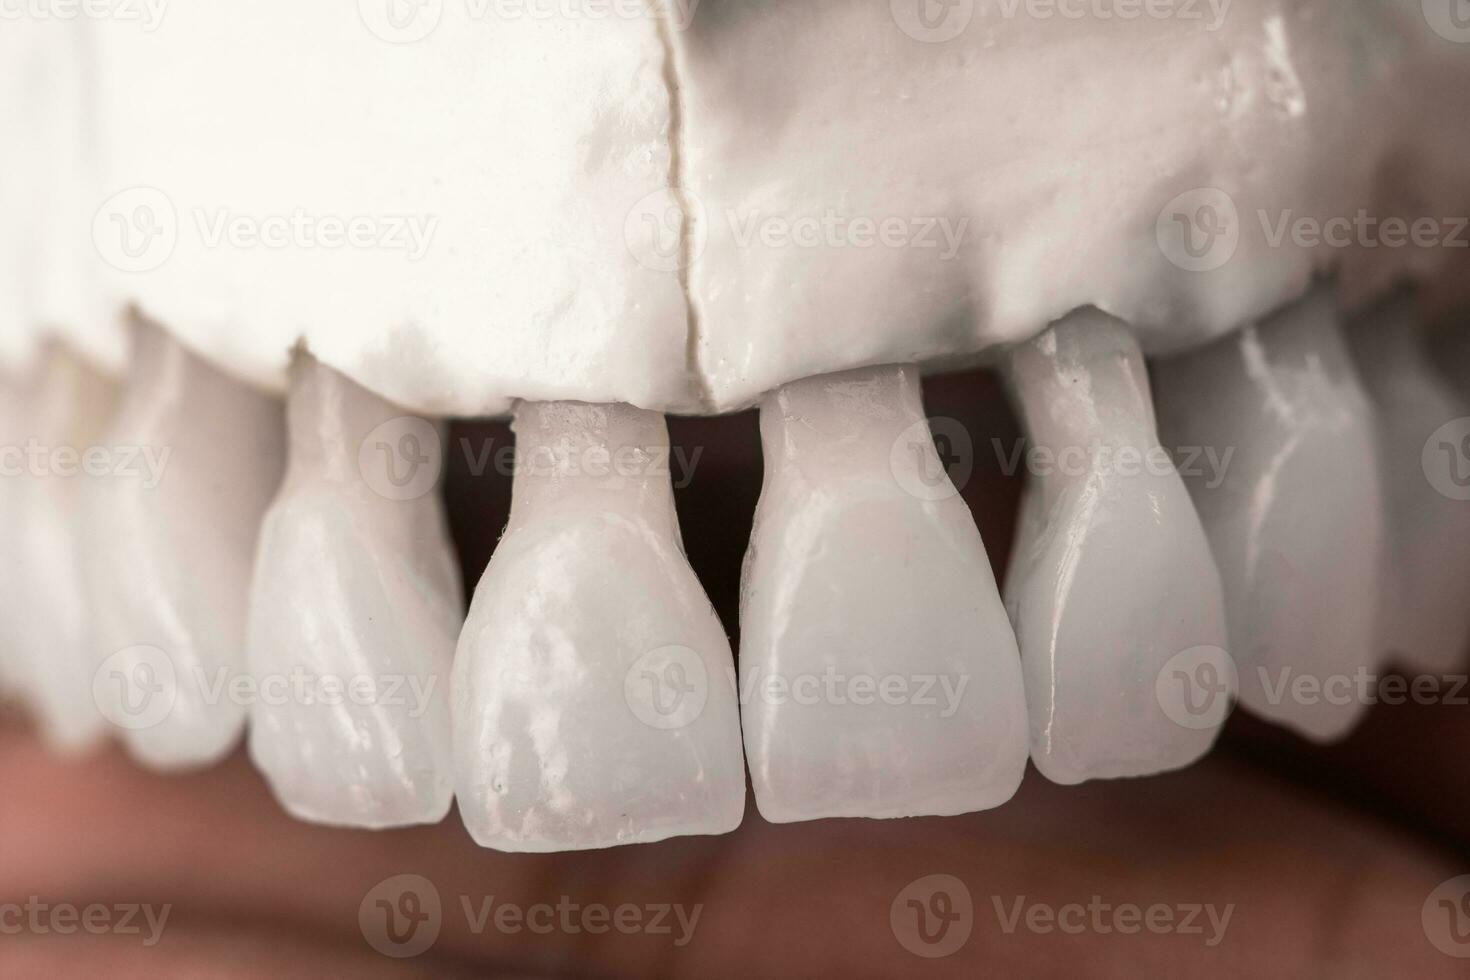 superiore umano mascella con denti anatomia modello isolato su blu sfondo. salutare denti, dentale cura e ortodontico medico concetto. foto